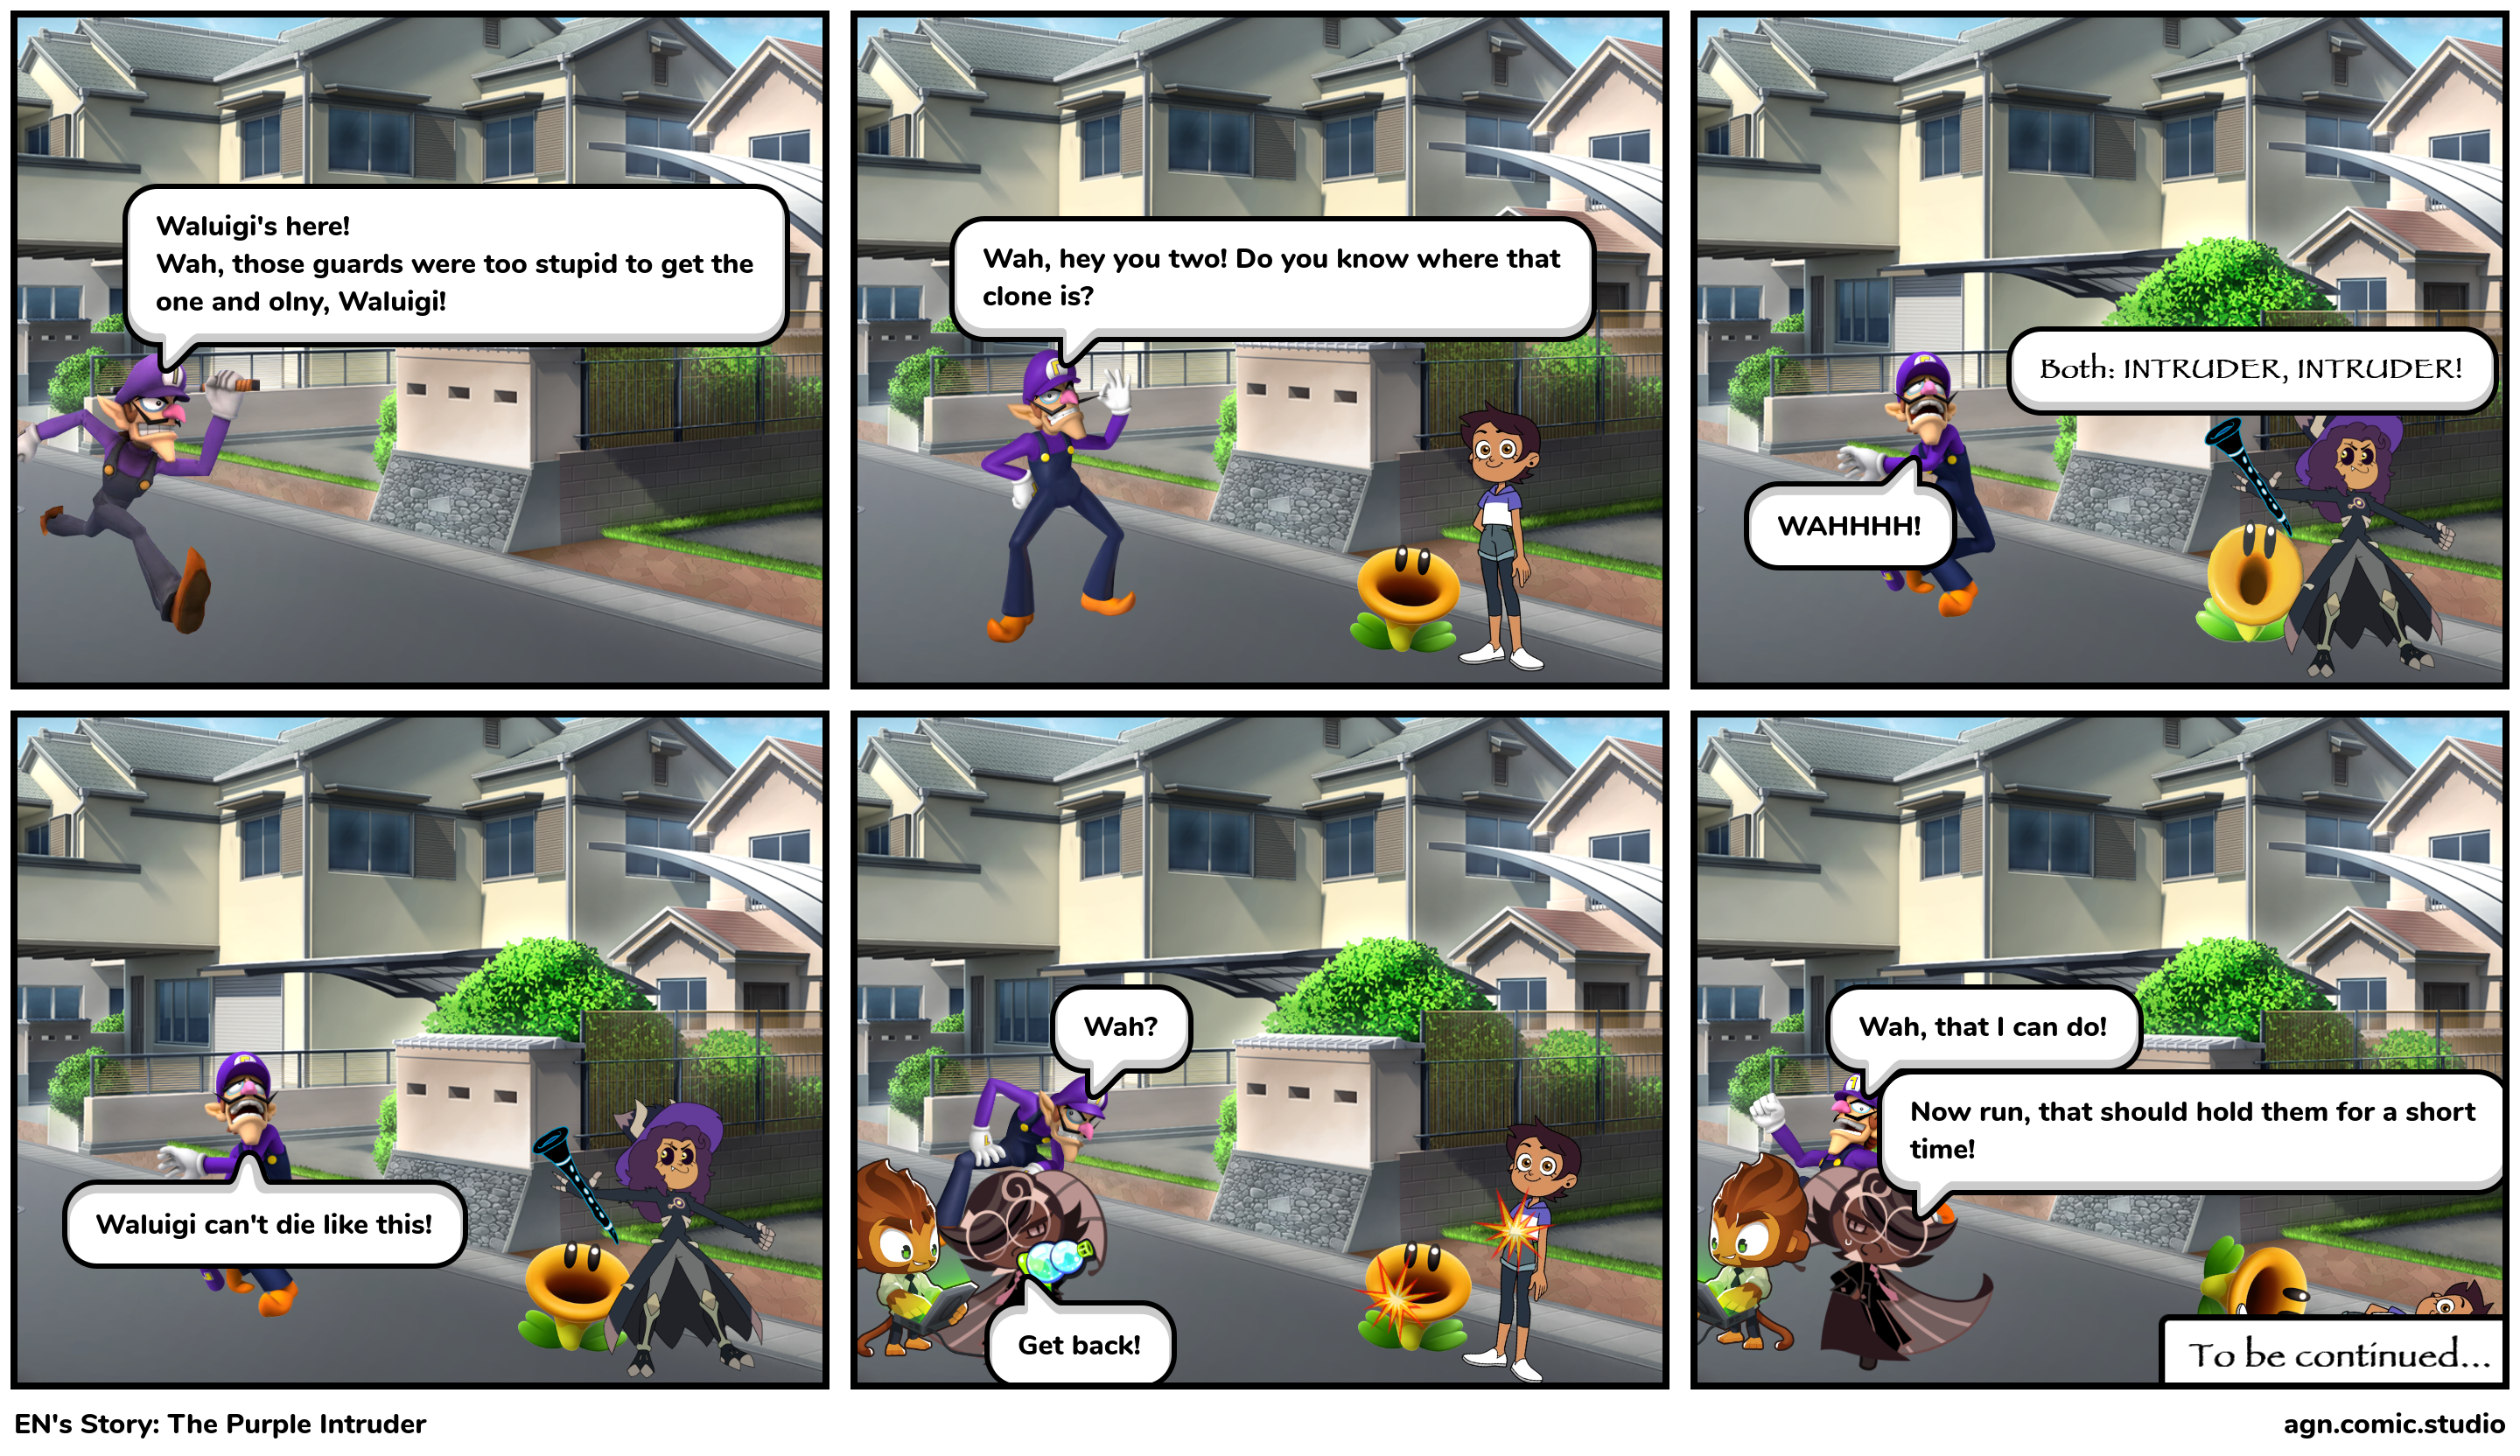 EN's Story: The Purple Intruder